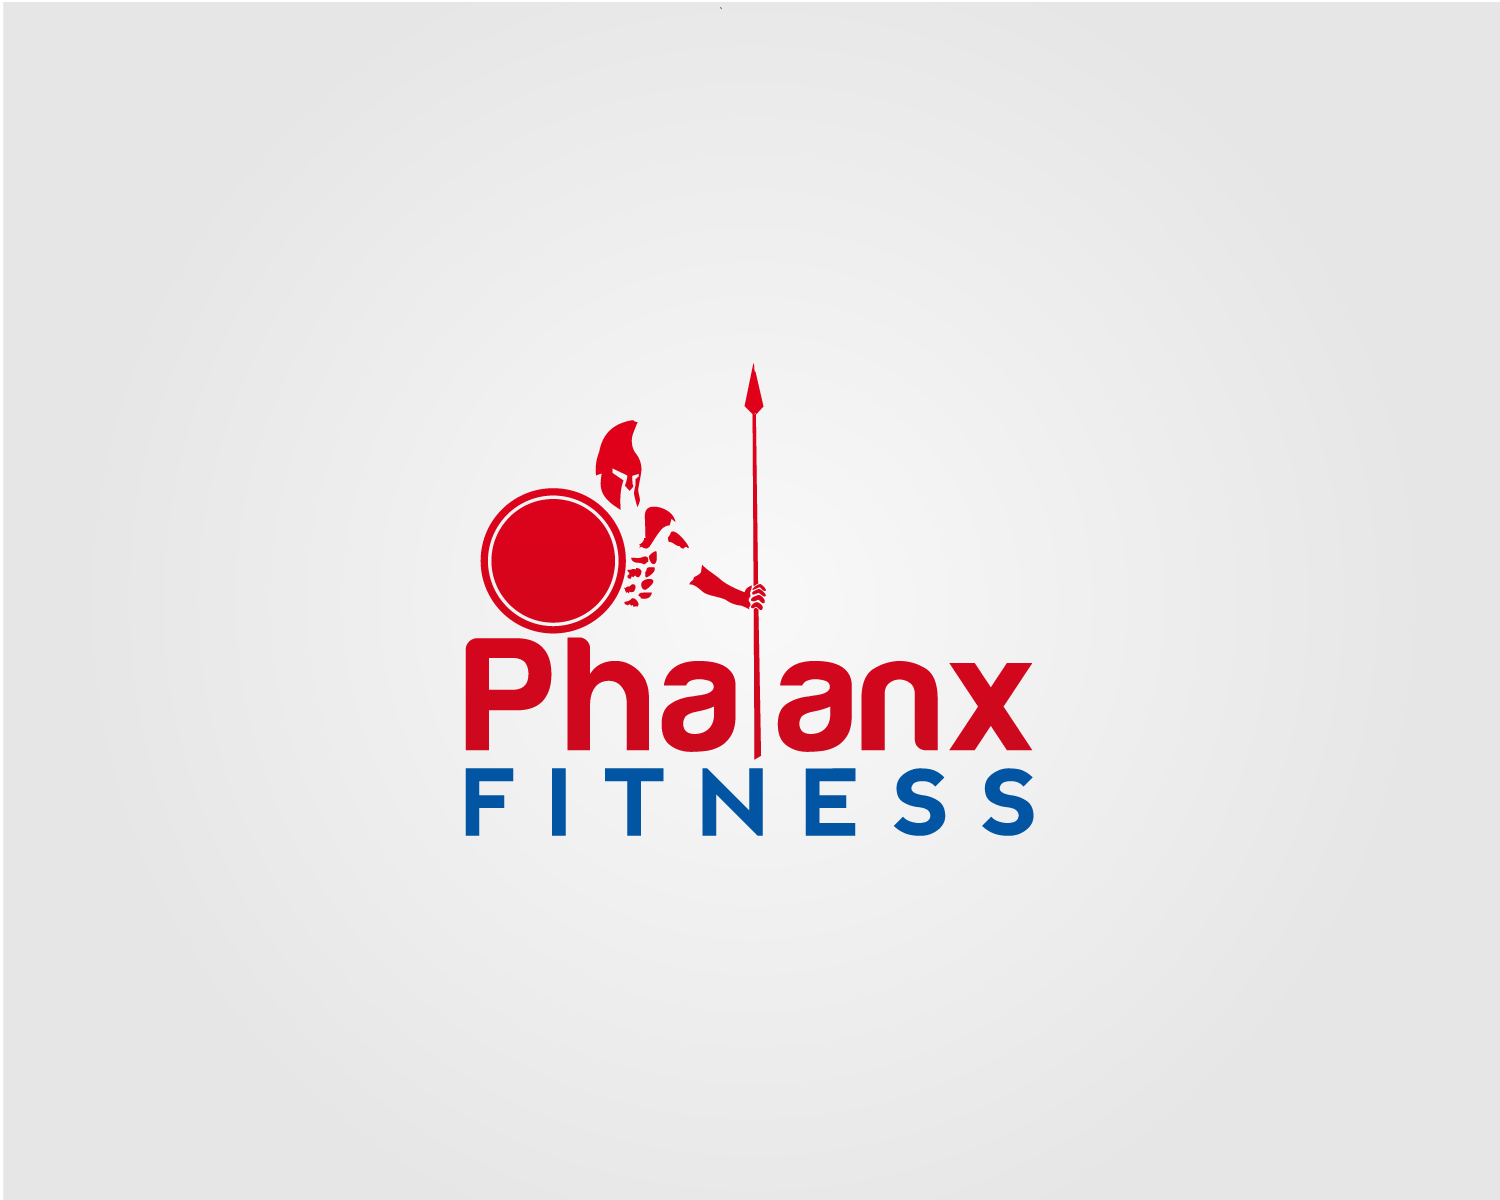 Phalanx Logo - Masculine, Bold, Fitness Logo Design for Phalanx Fitness